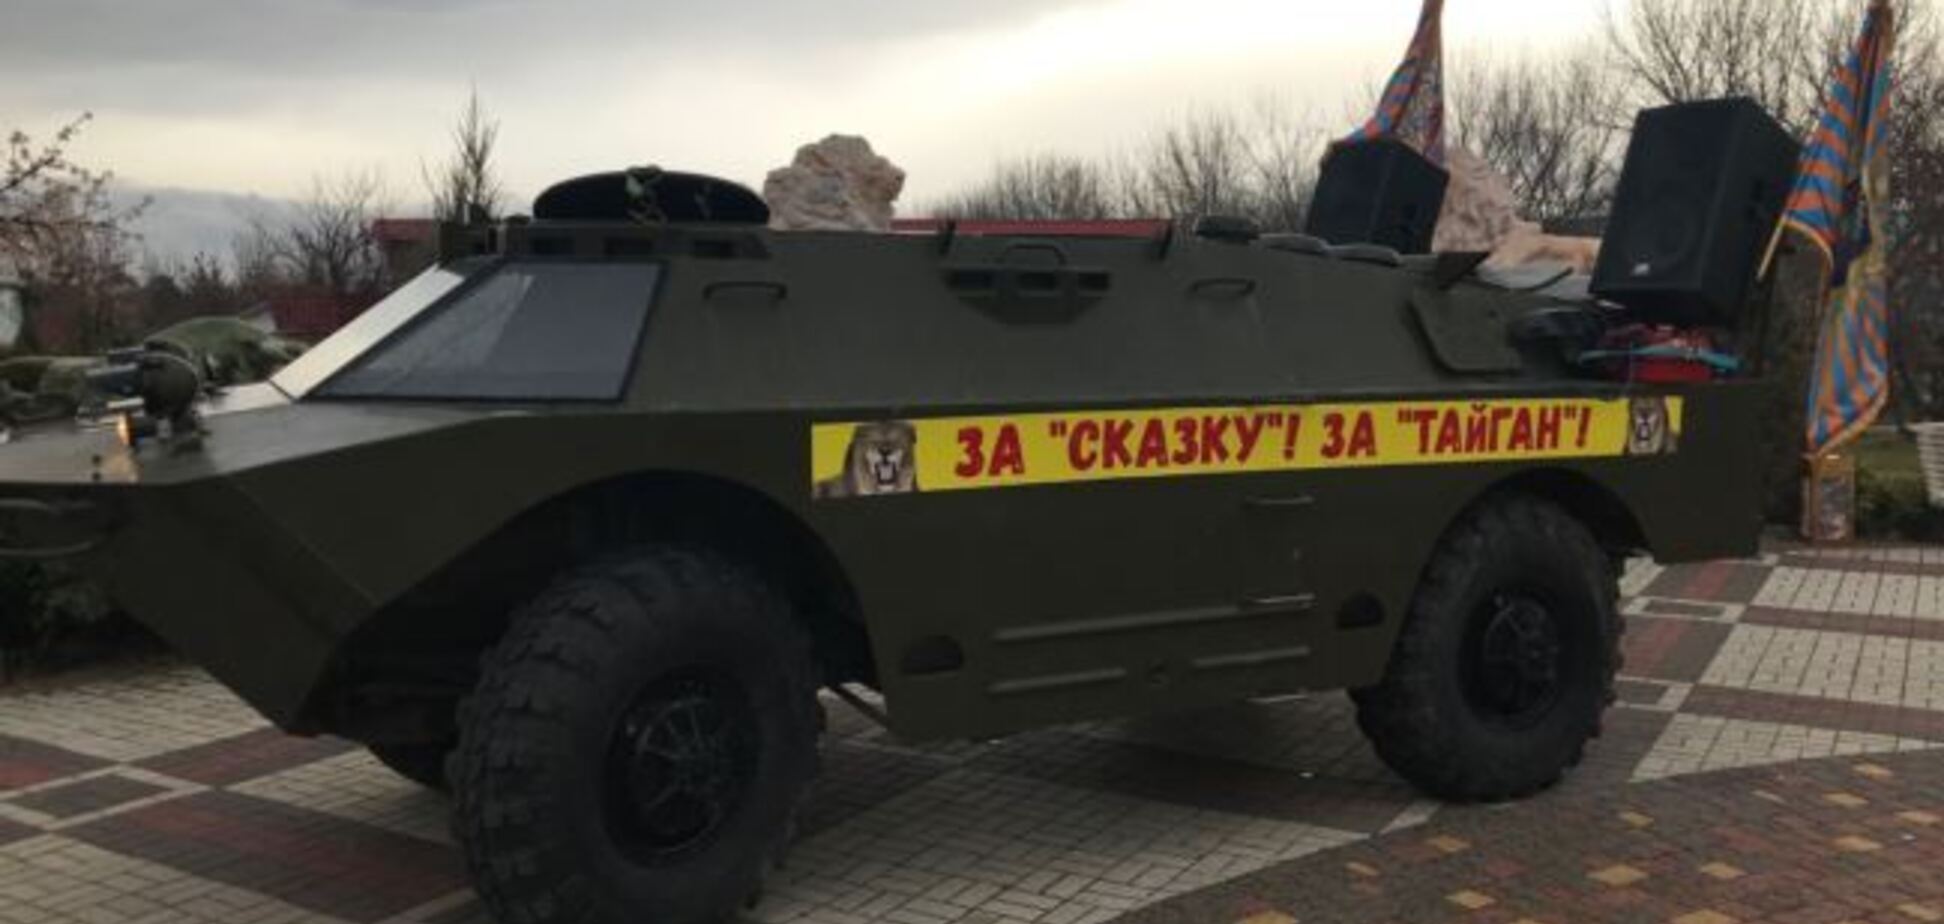 Зрадив Україну і поплатився: затятий фанат 'русского міра' почав 'священну війну' в Криму